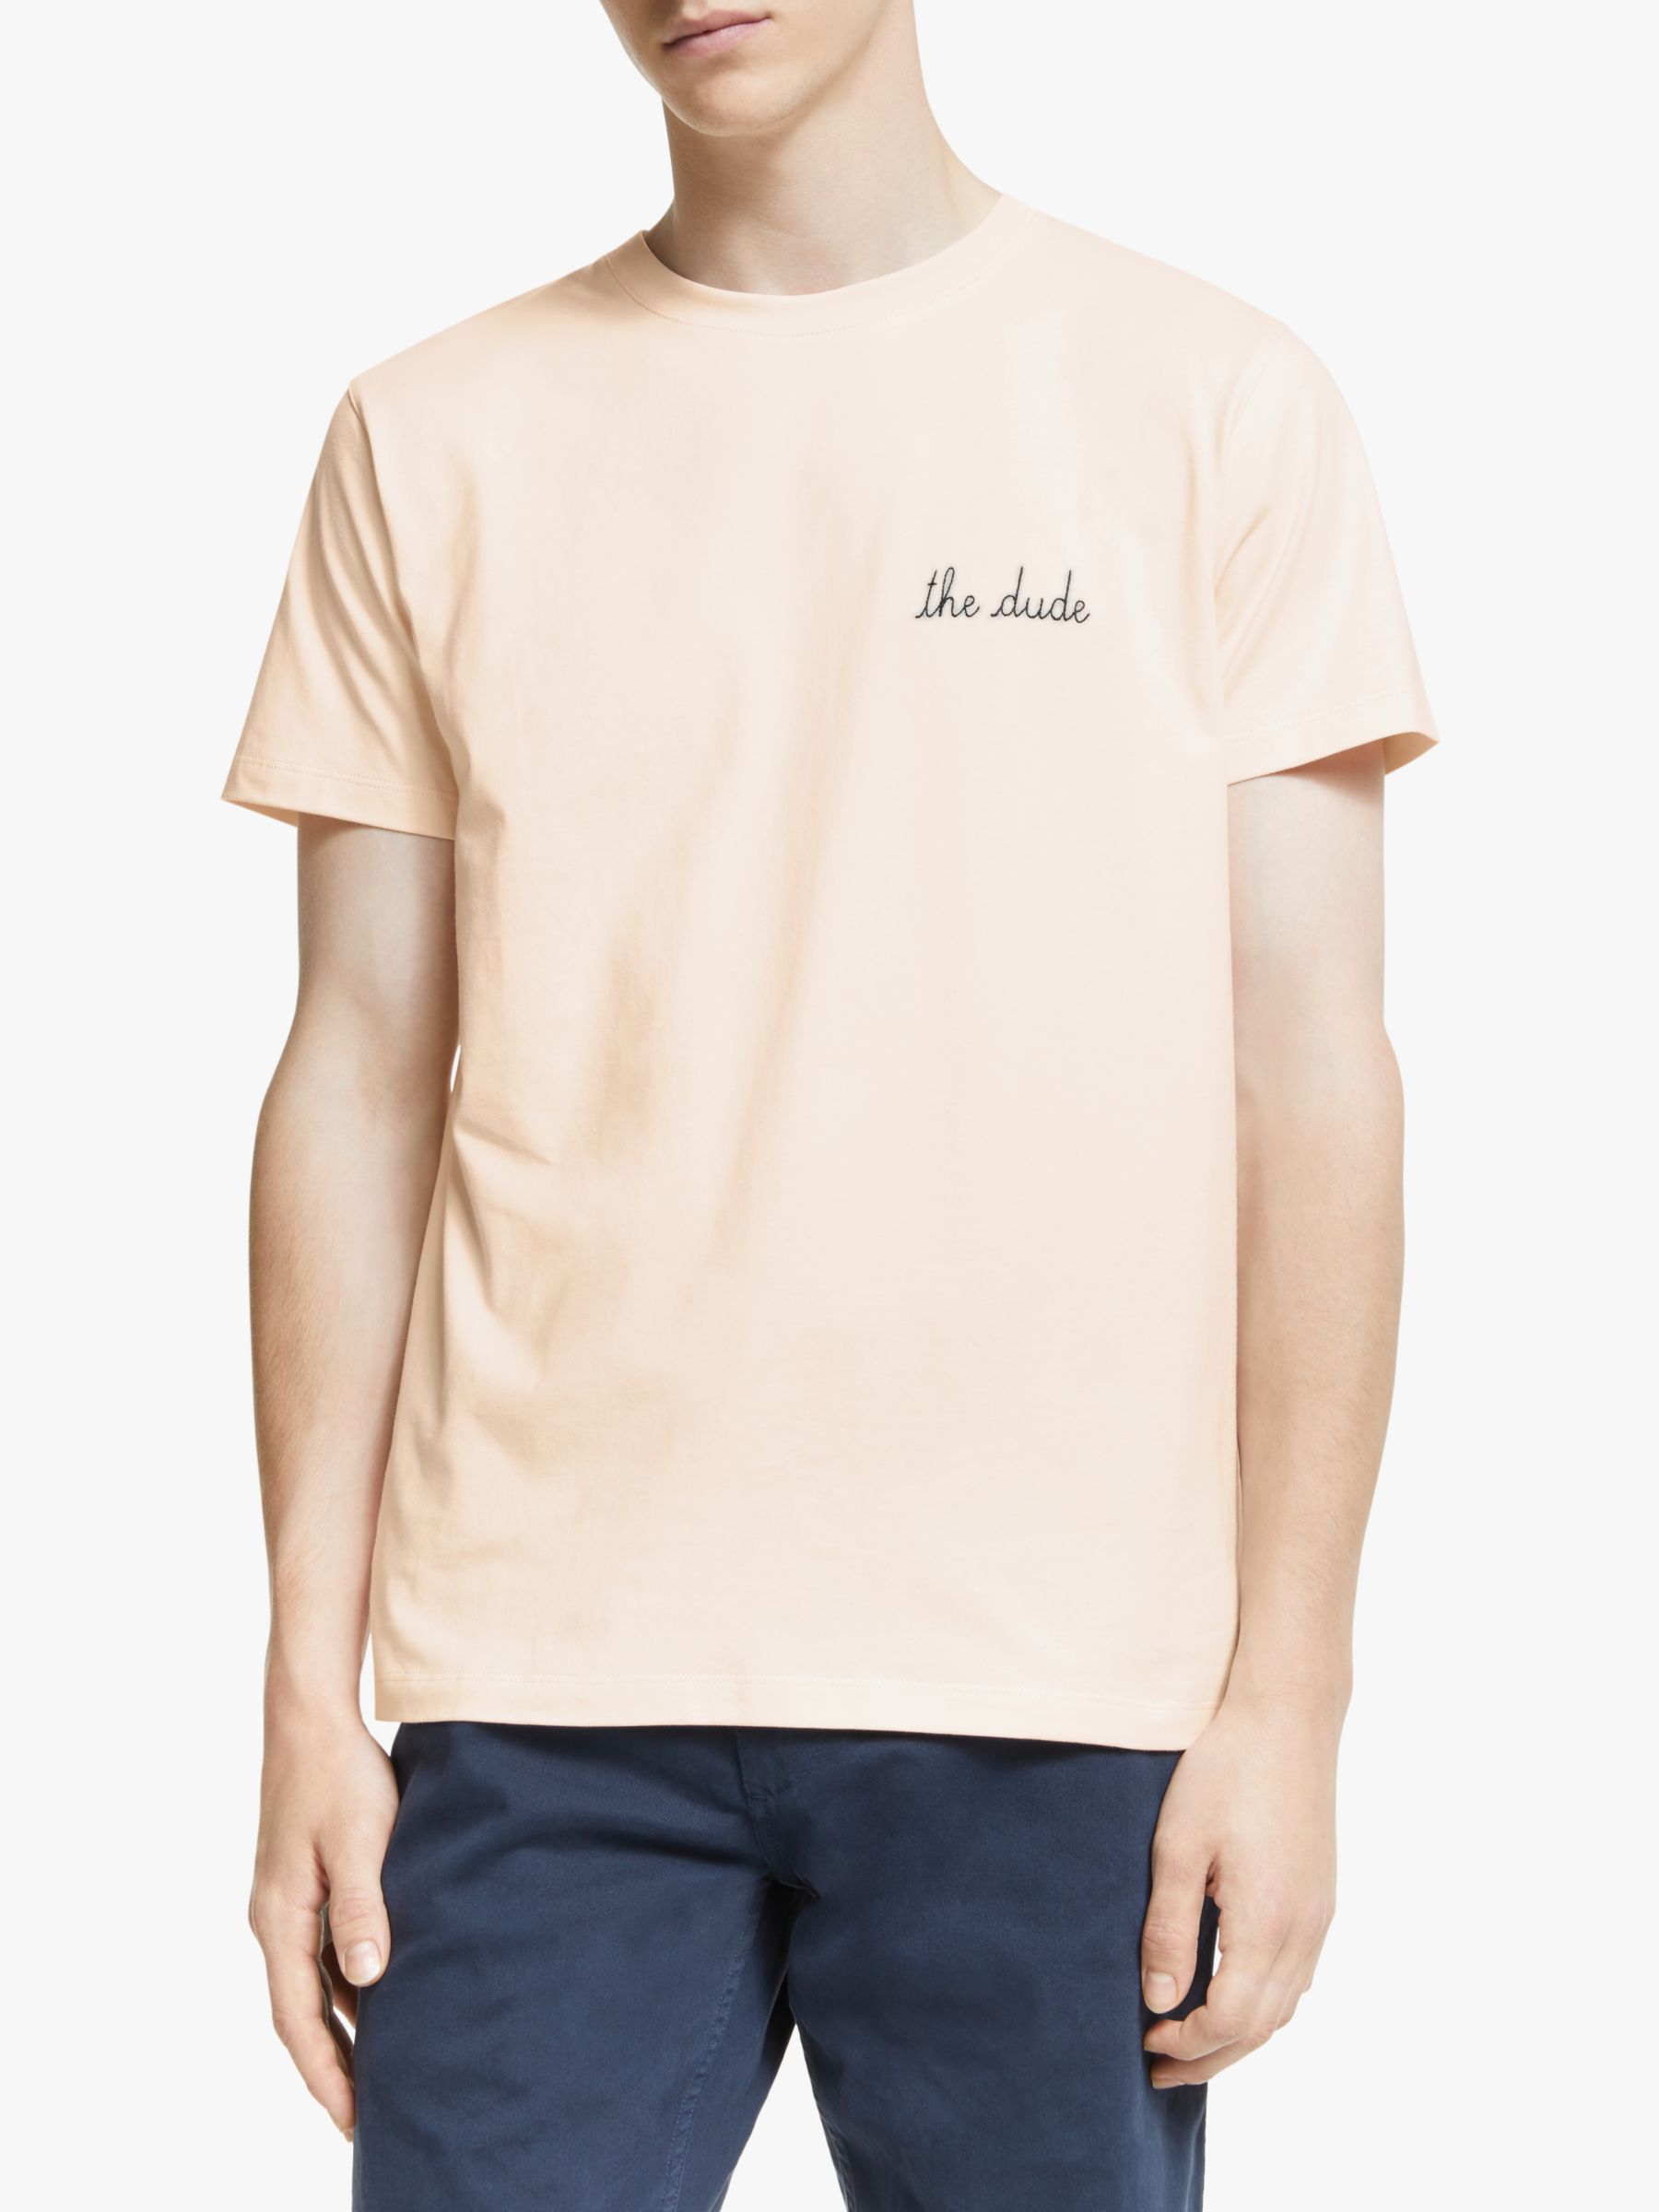 Maison Labiche The Dude T-Shirt, Soft Pink